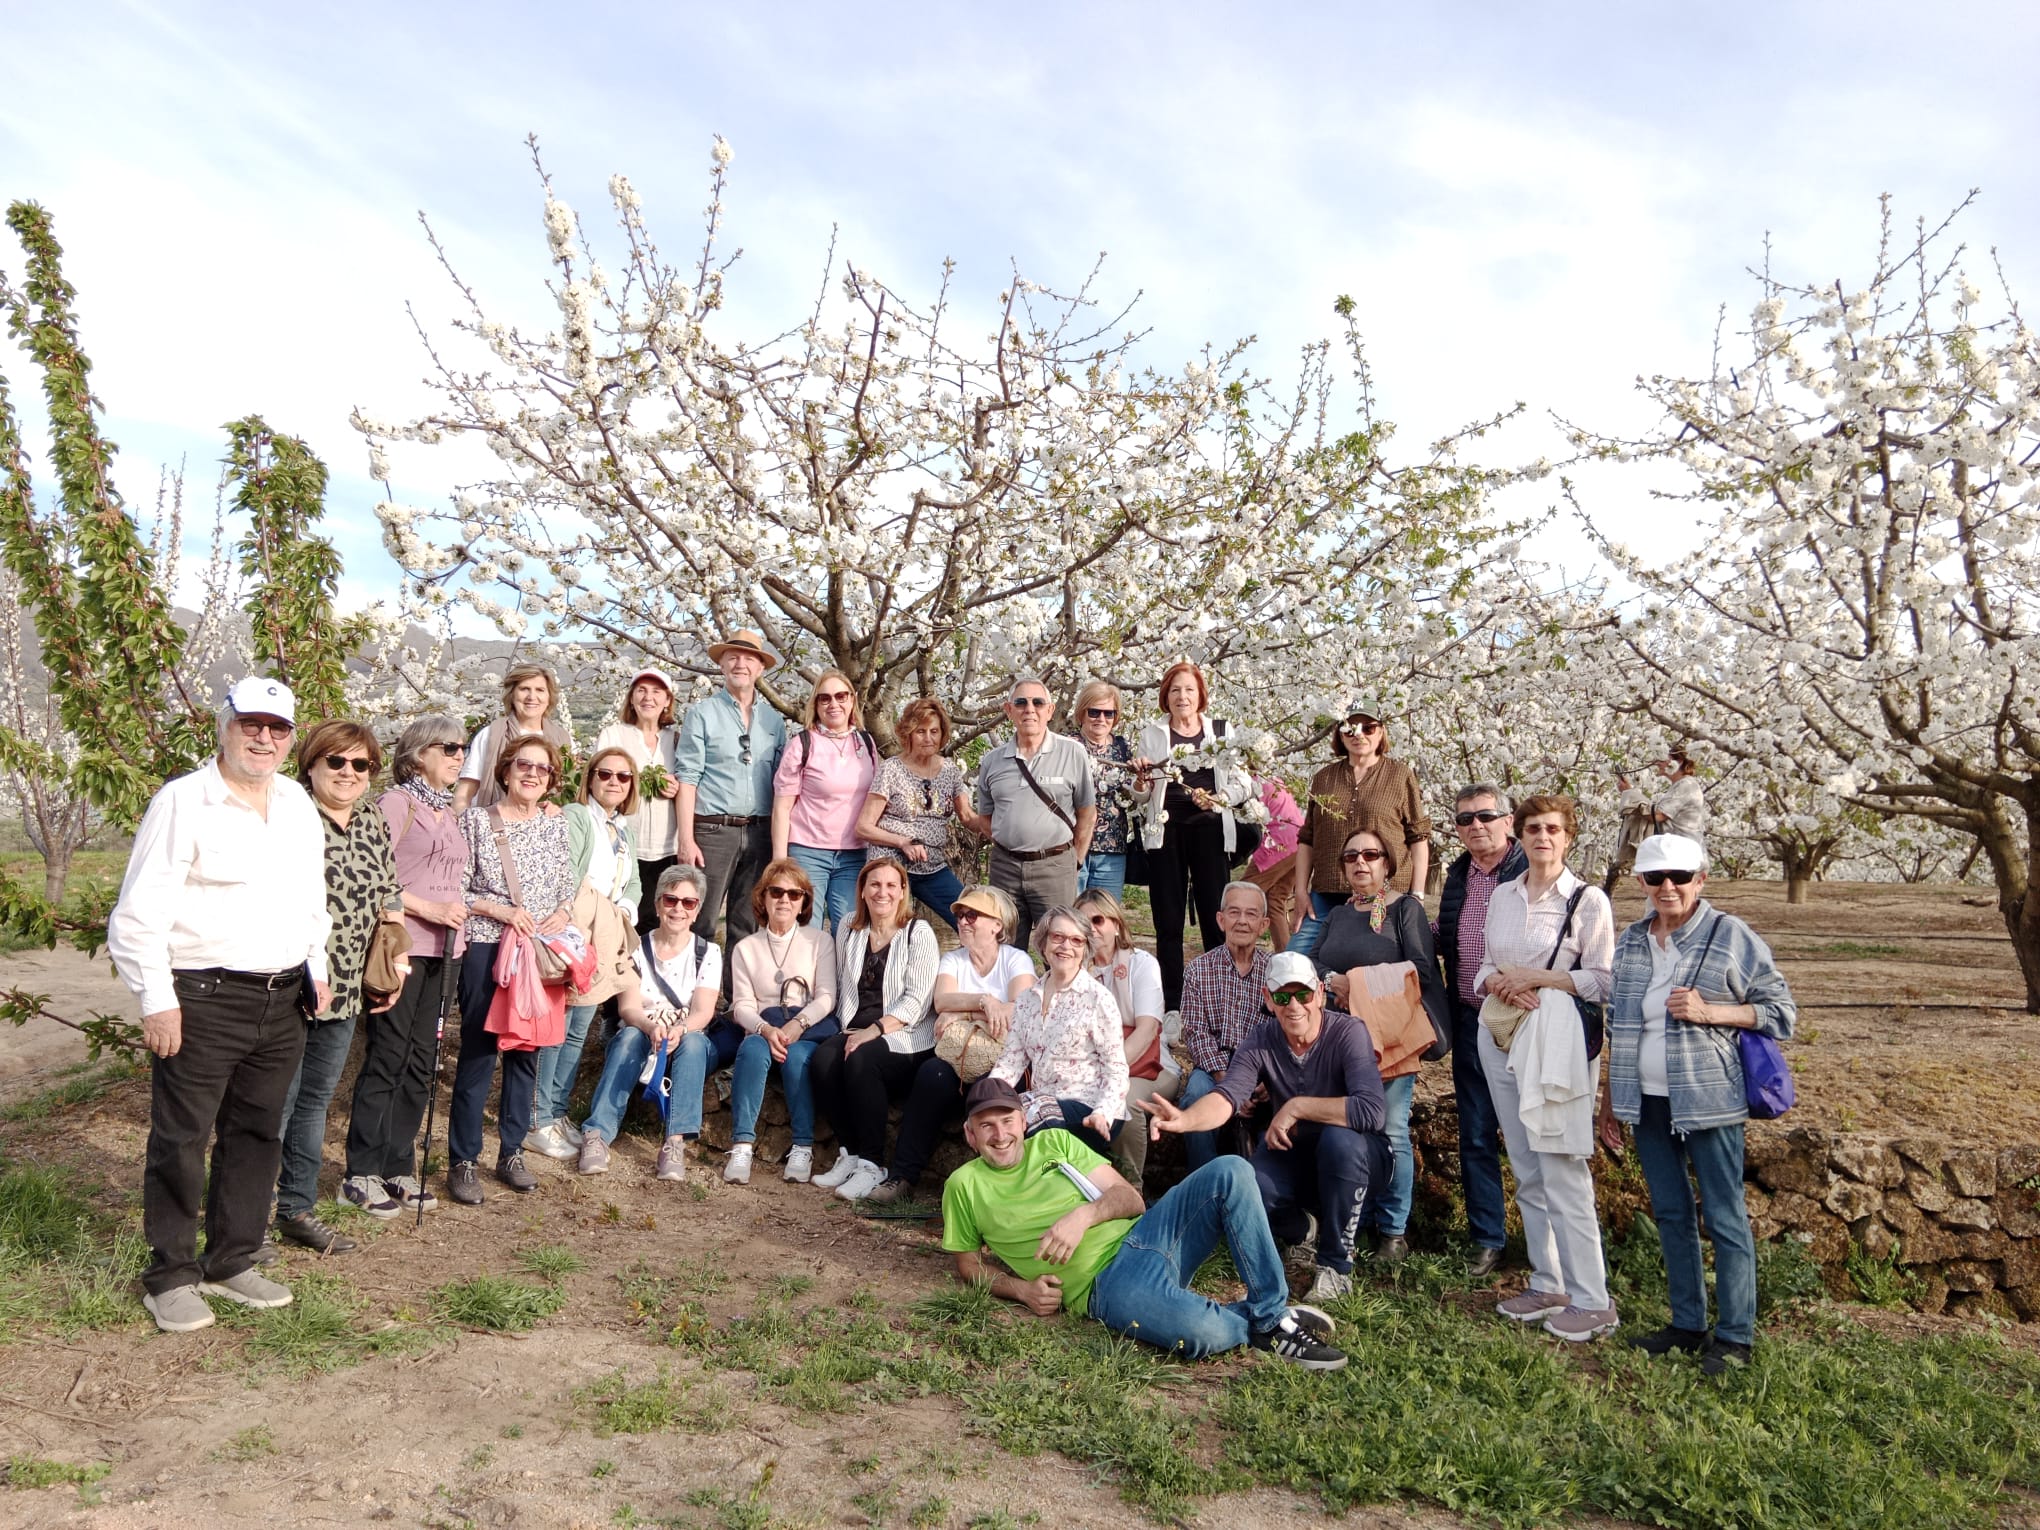 ESPECTÁCULO NATURAL 2023: Cuando florecen los cerezos en el Valle del Jerte  este año 2023